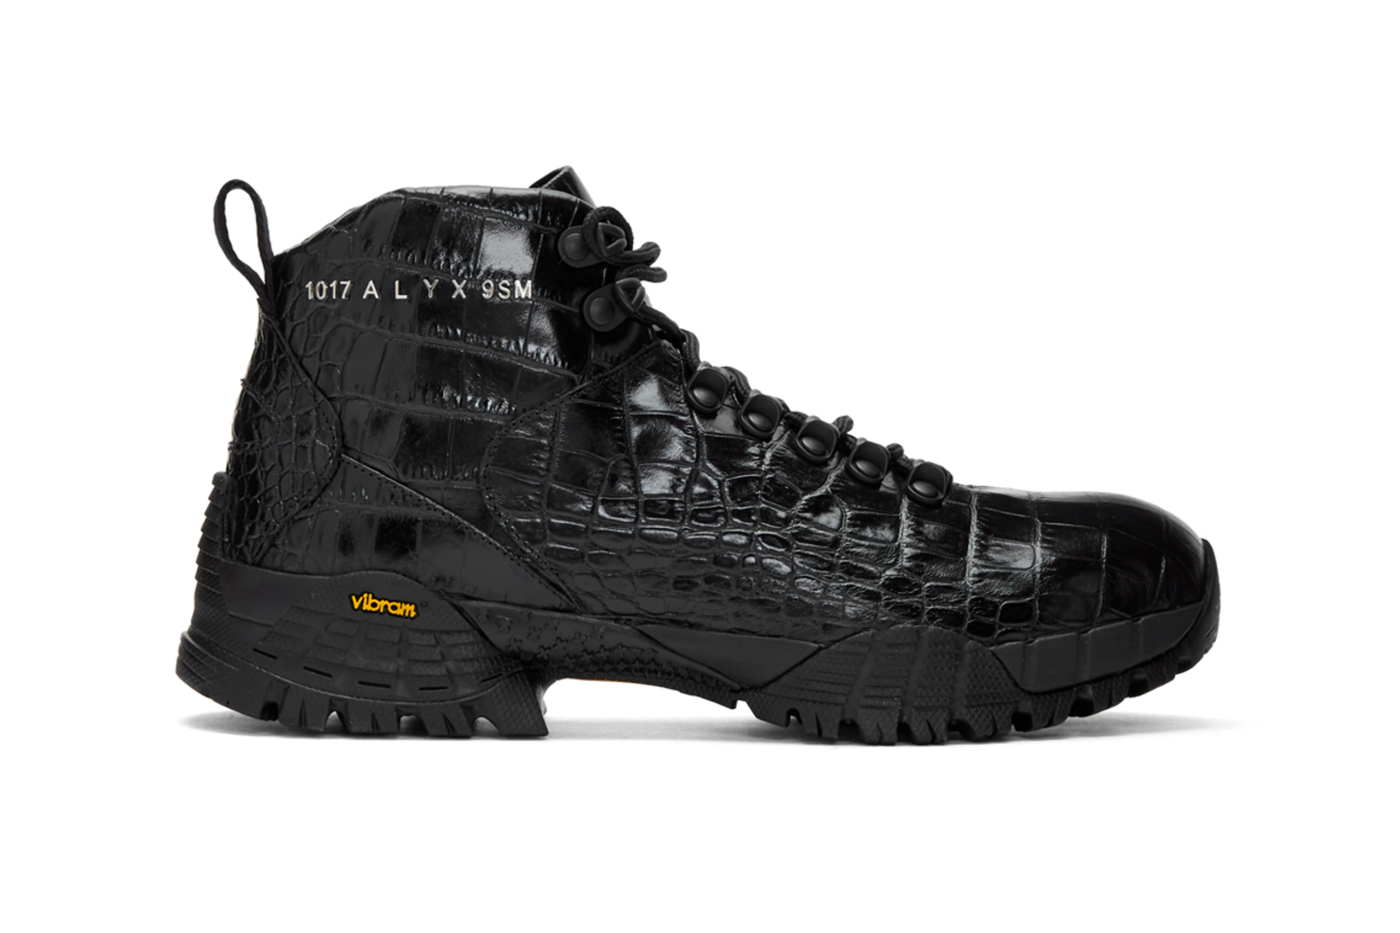 best steel toe waterproof work boots